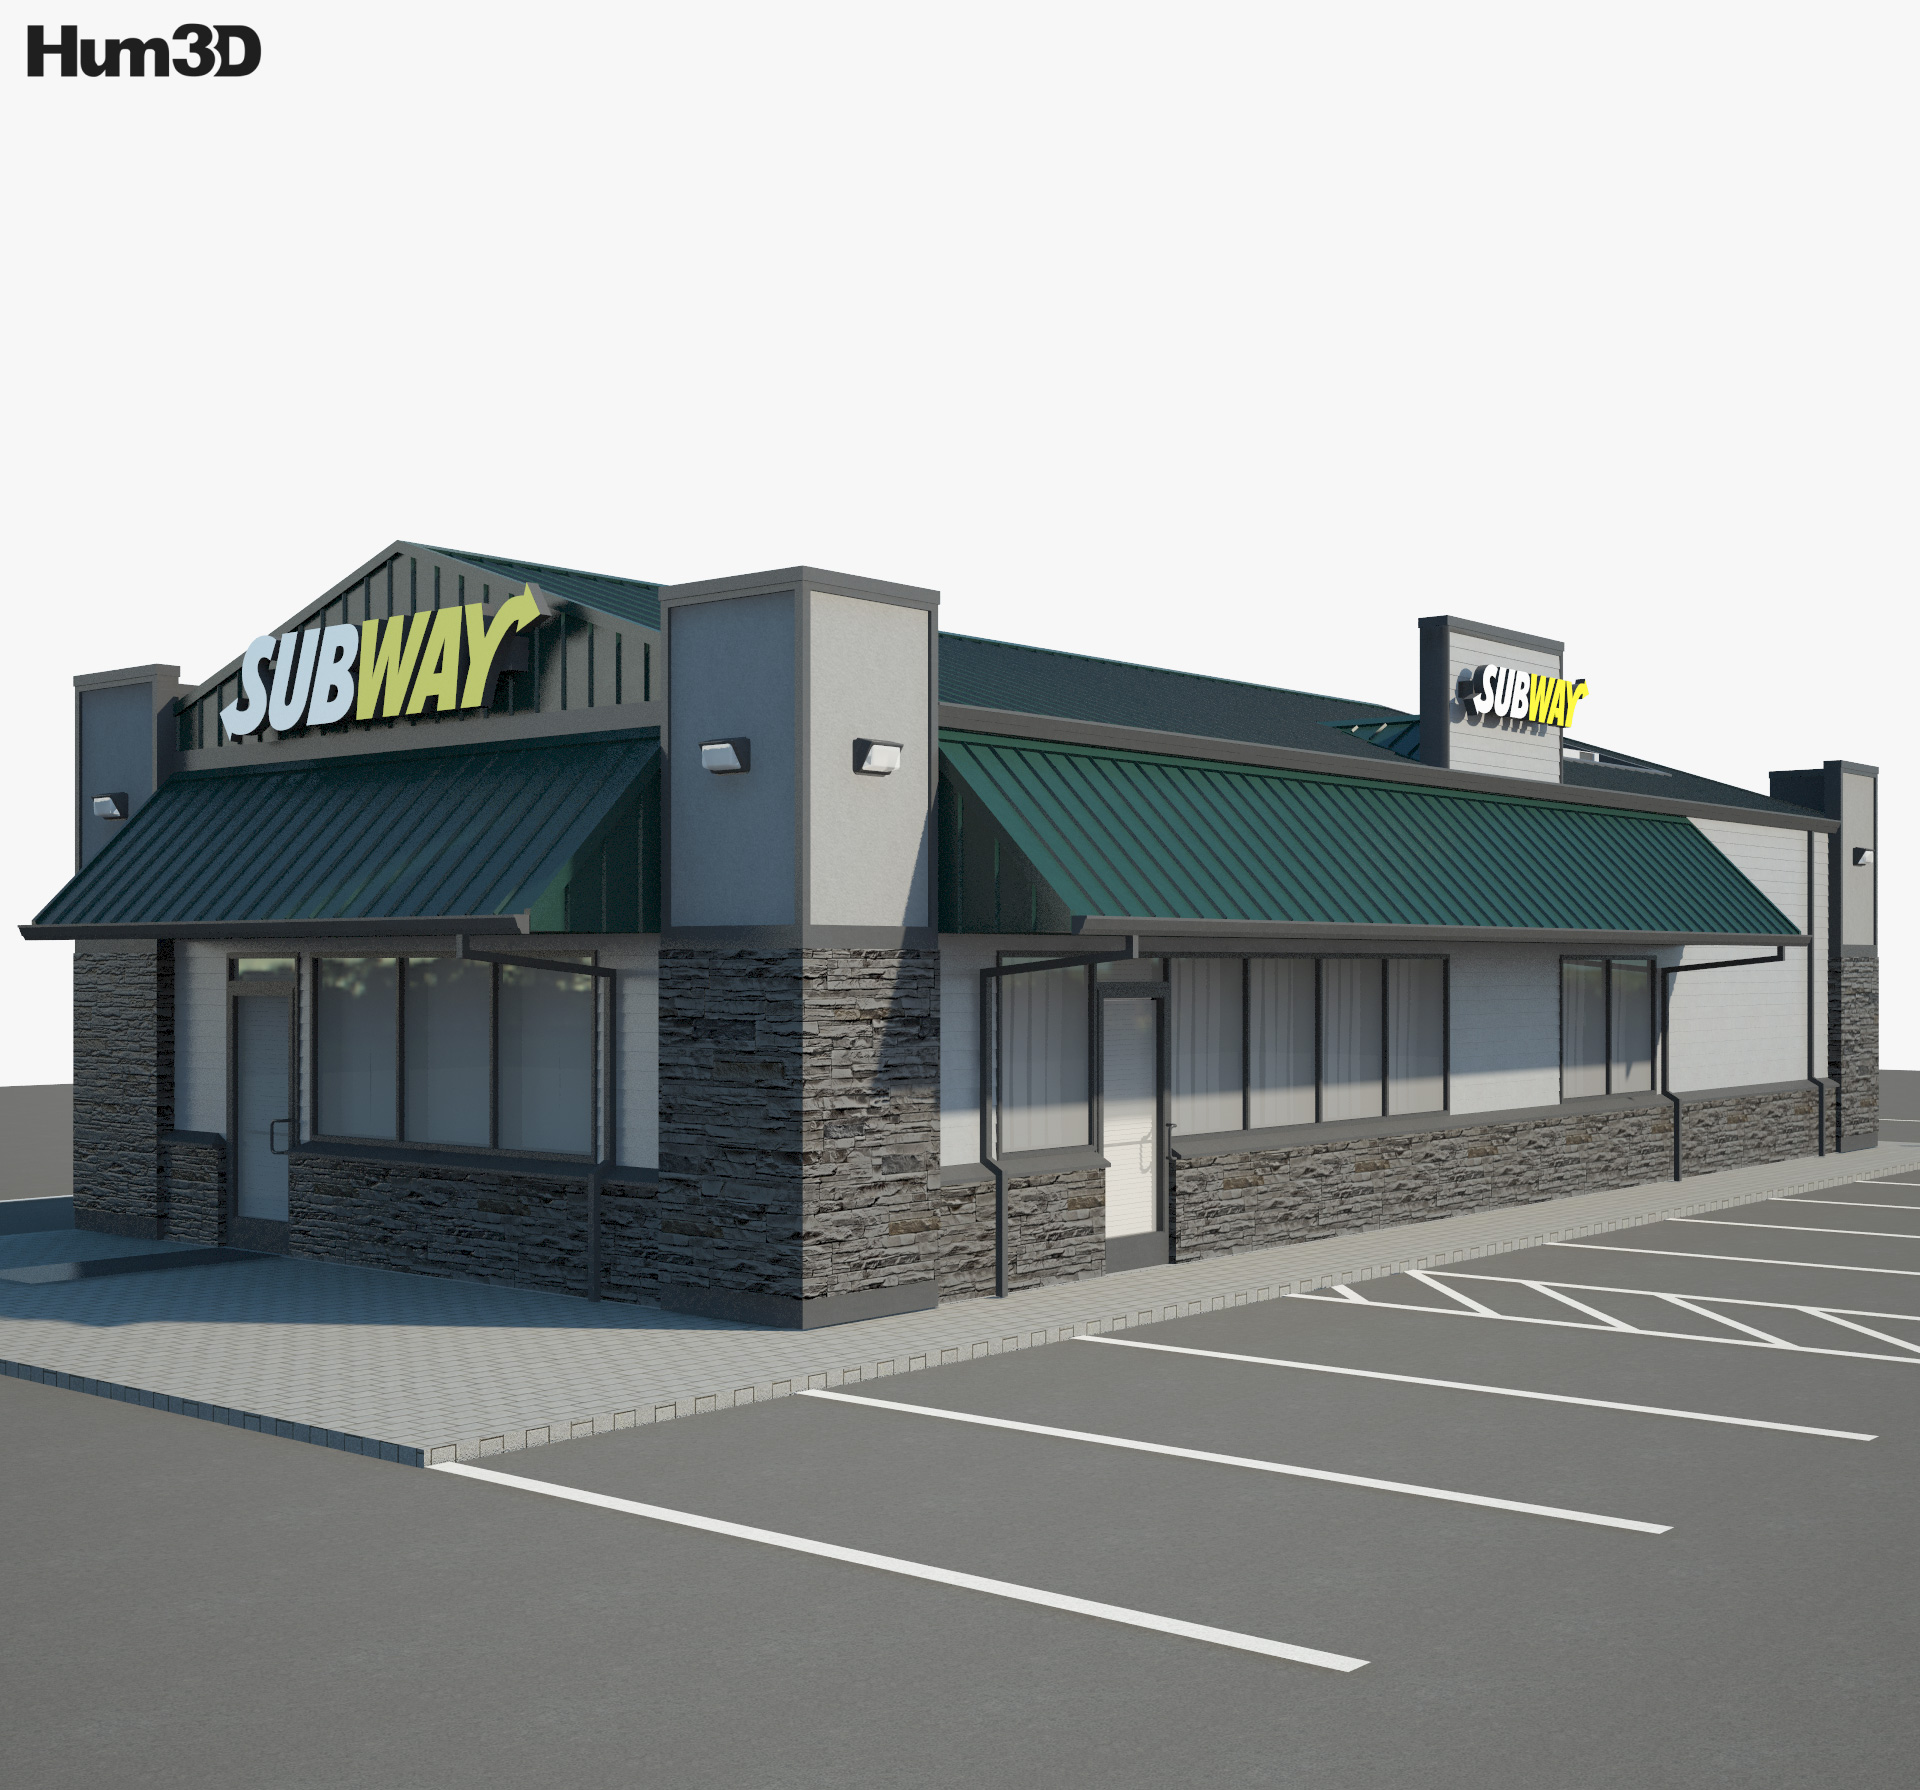 Subway レストラン 03 3Dモデル